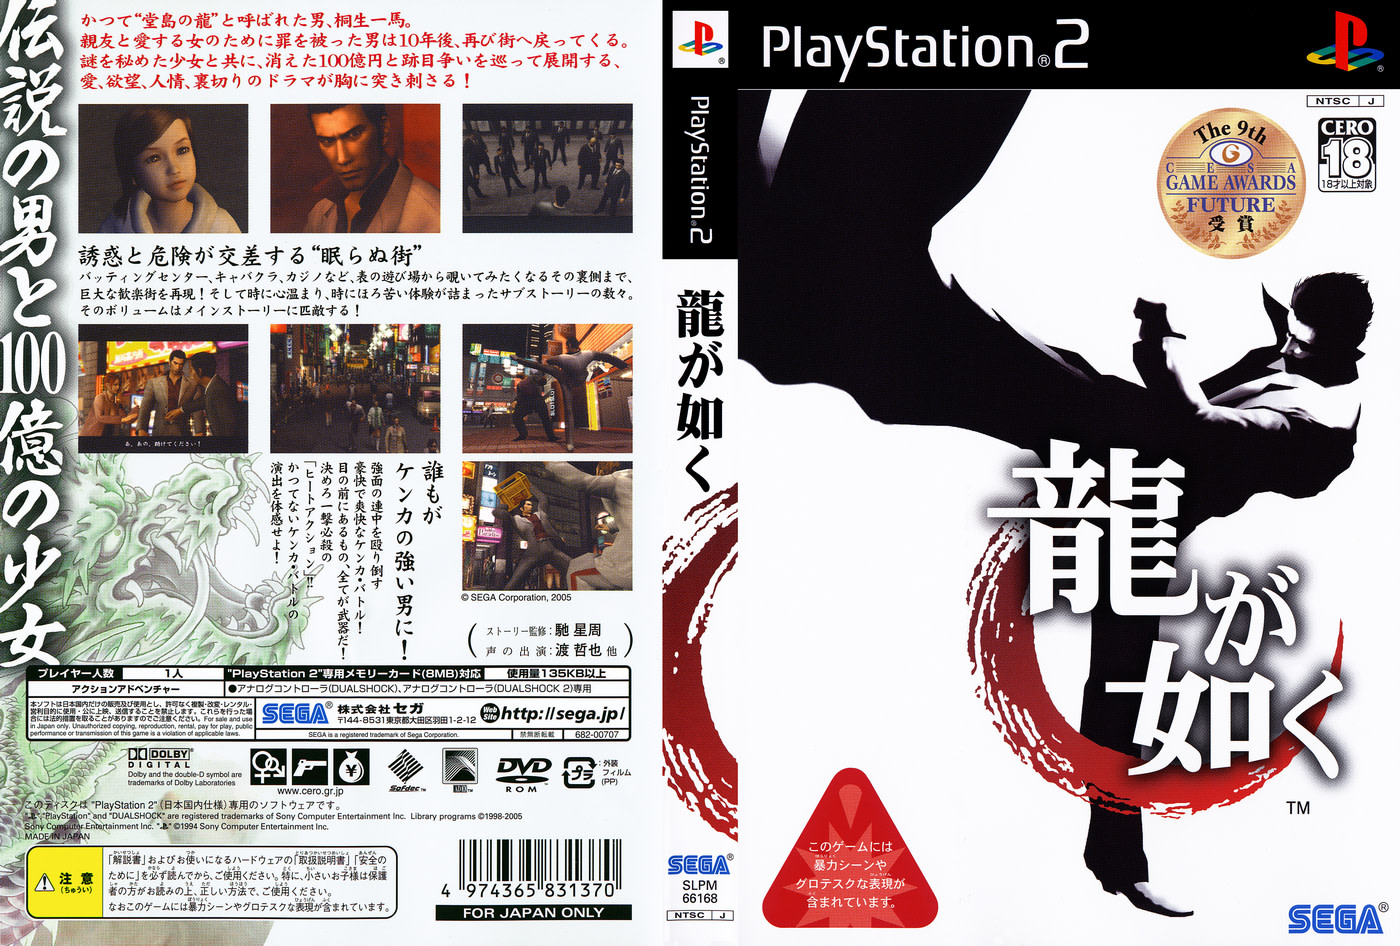 龍が如く PlayStation 2 the Best ランキング総合1位